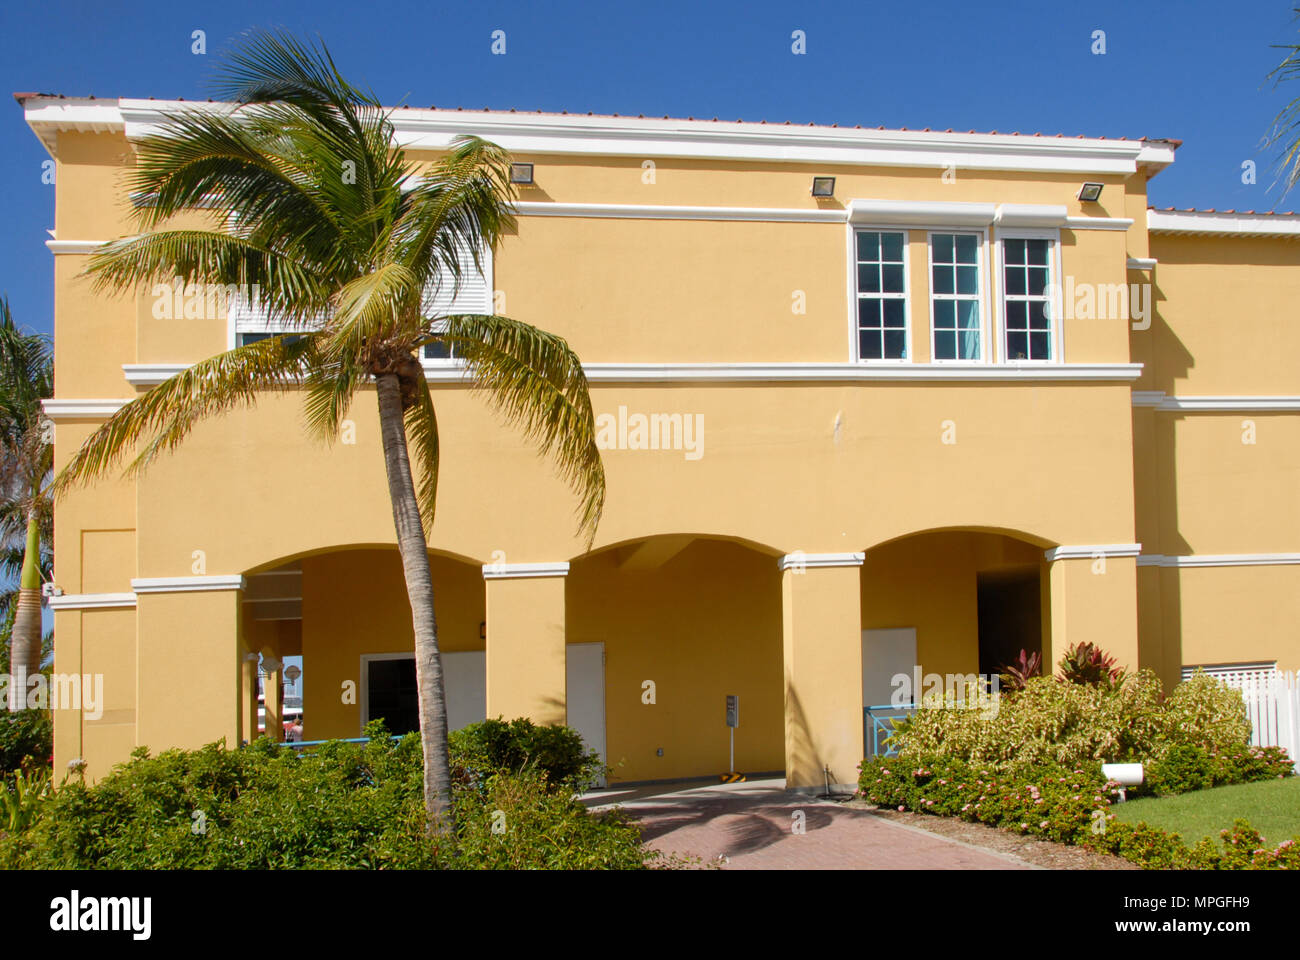 Smart gelb lackierte House, St. Maarten, Karibik Stockfoto